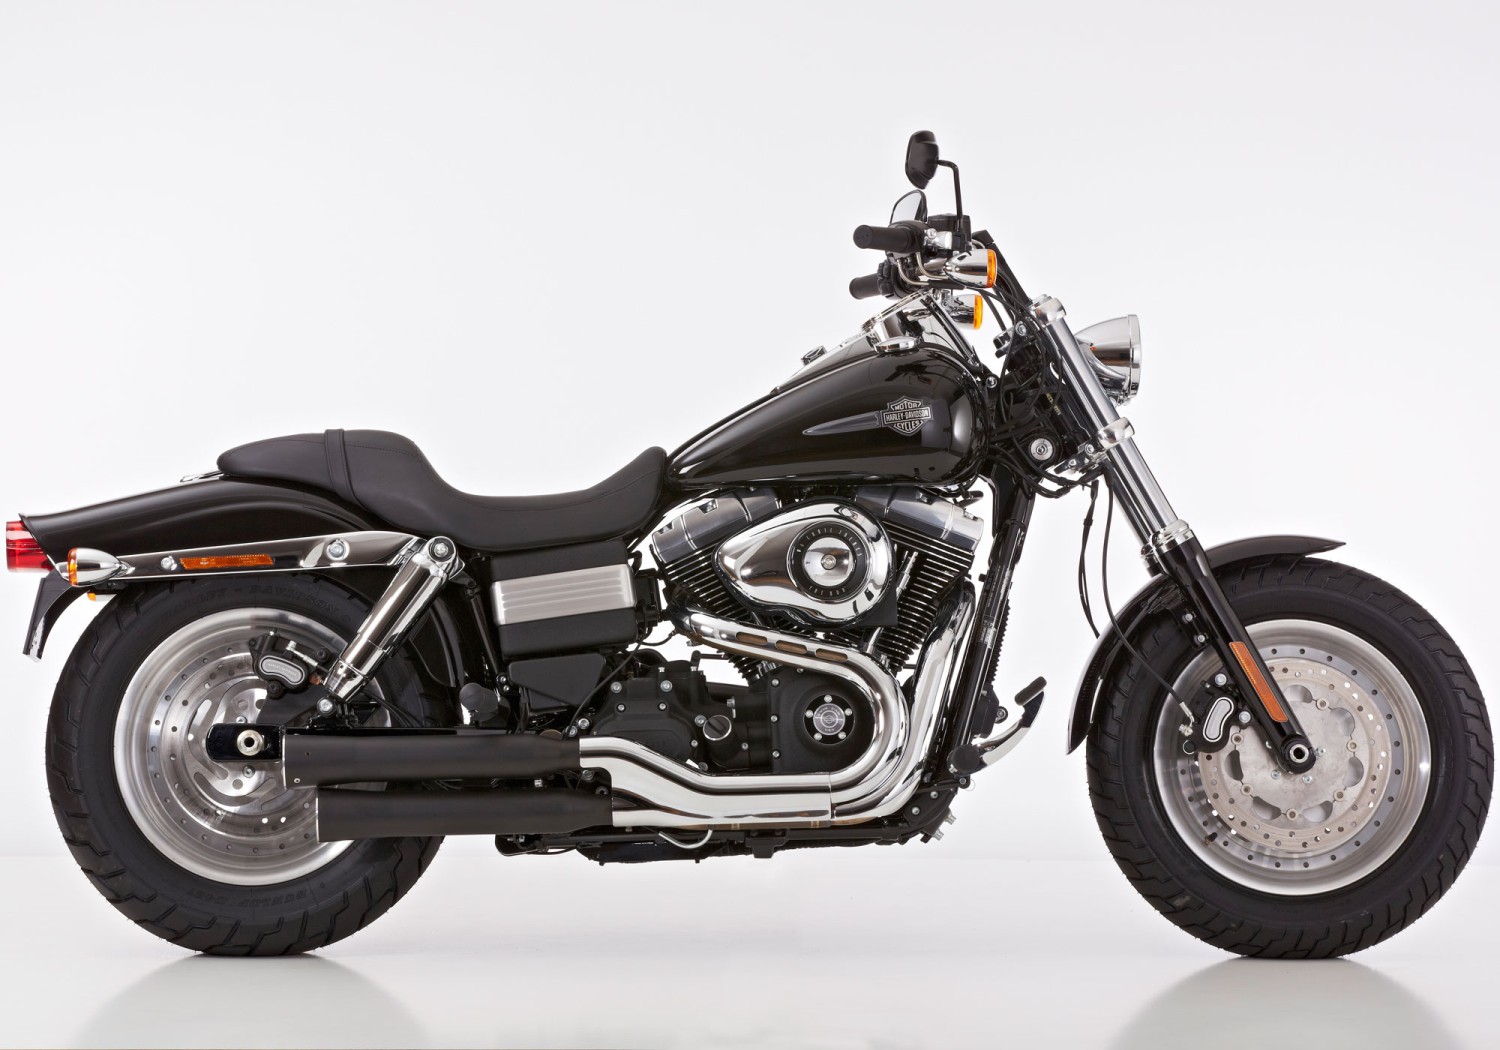  Harley Davidson Dyna Wide Glide, Bj. 2010-2012 